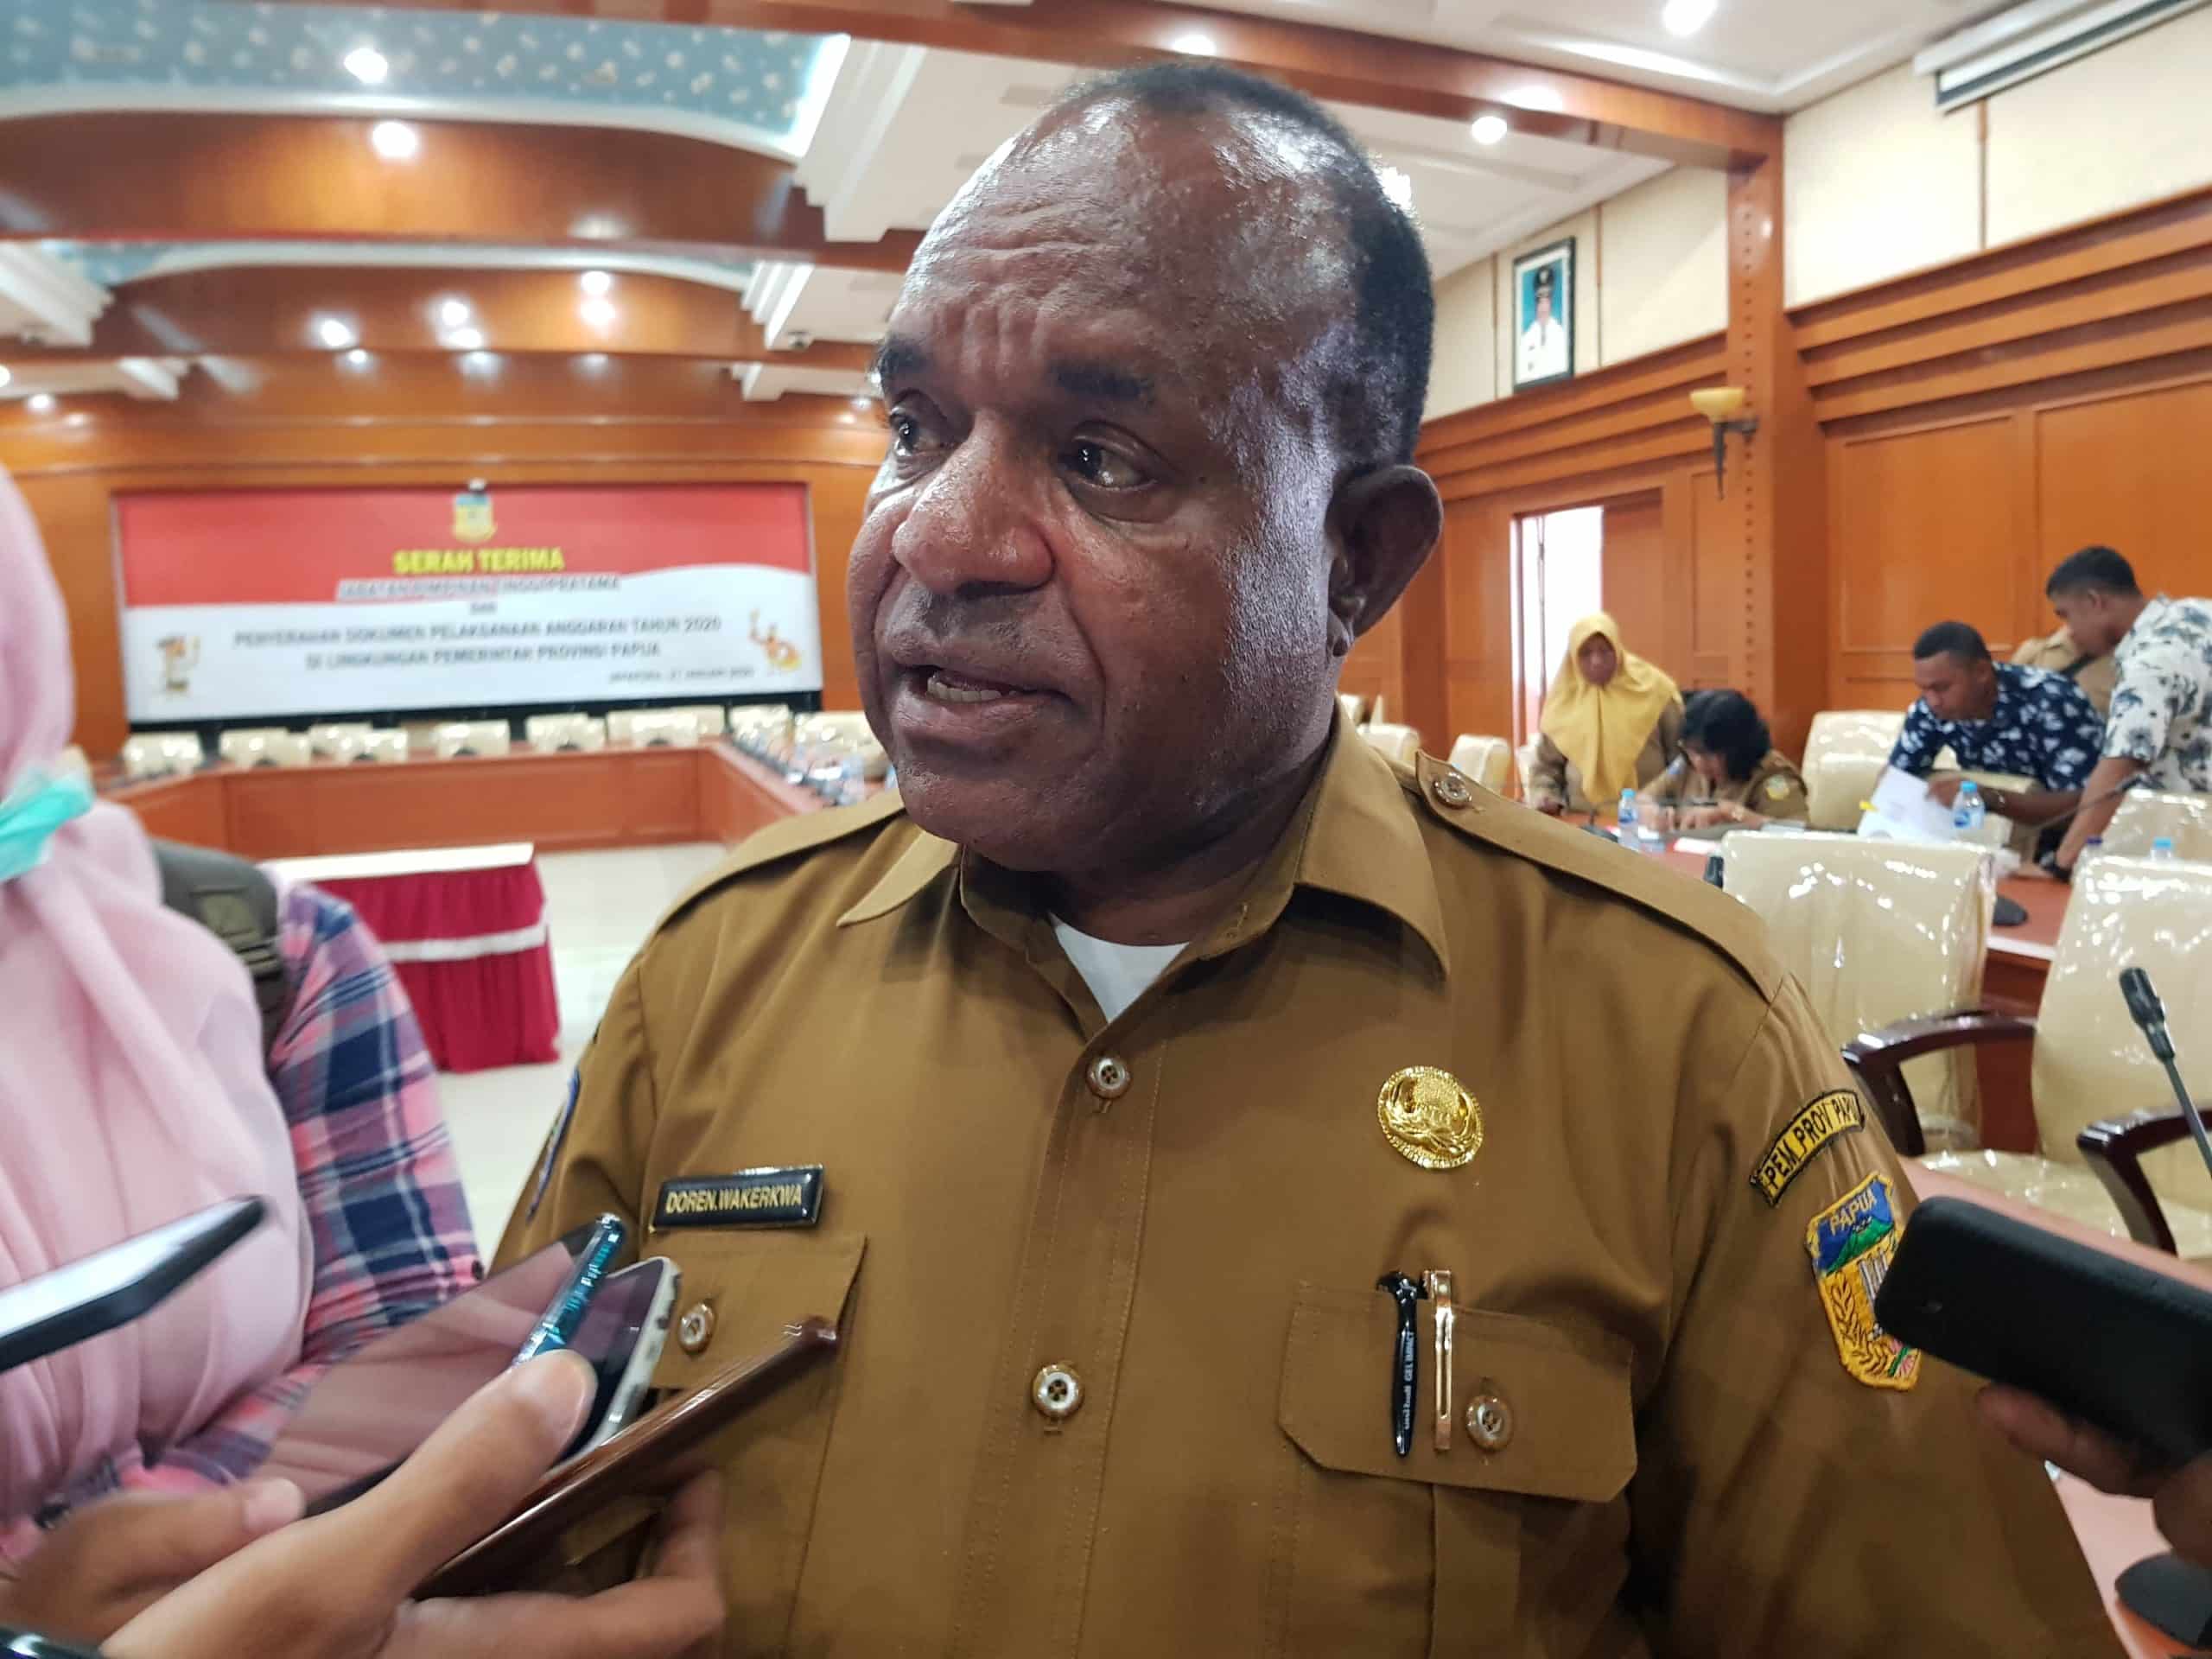 Pemprov Papua Minta Bupati Intan Jaya Turun Selesaikan Konflik di Daerahnya